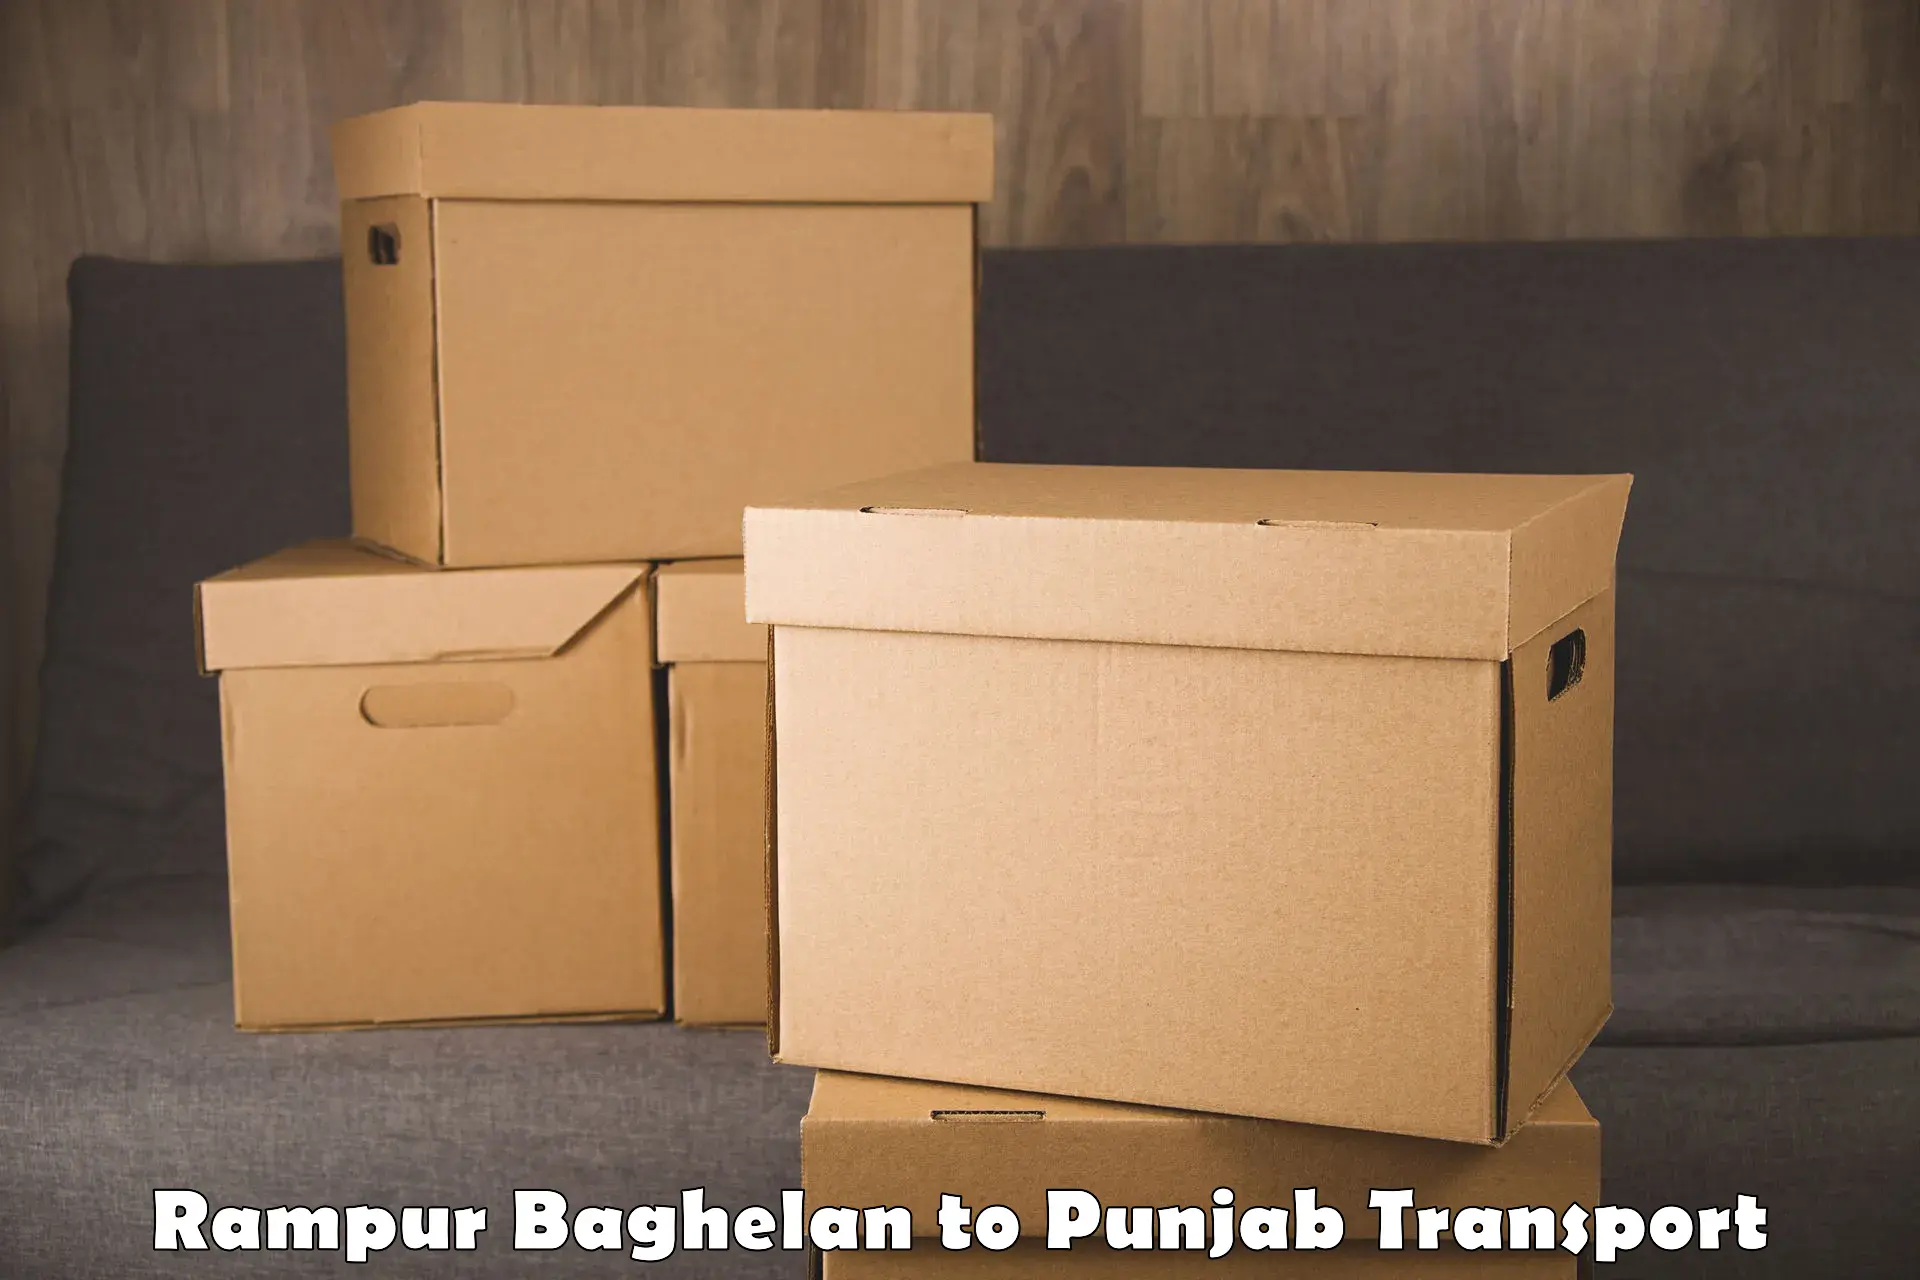 Online transport service Rampur Baghelan to Punjab